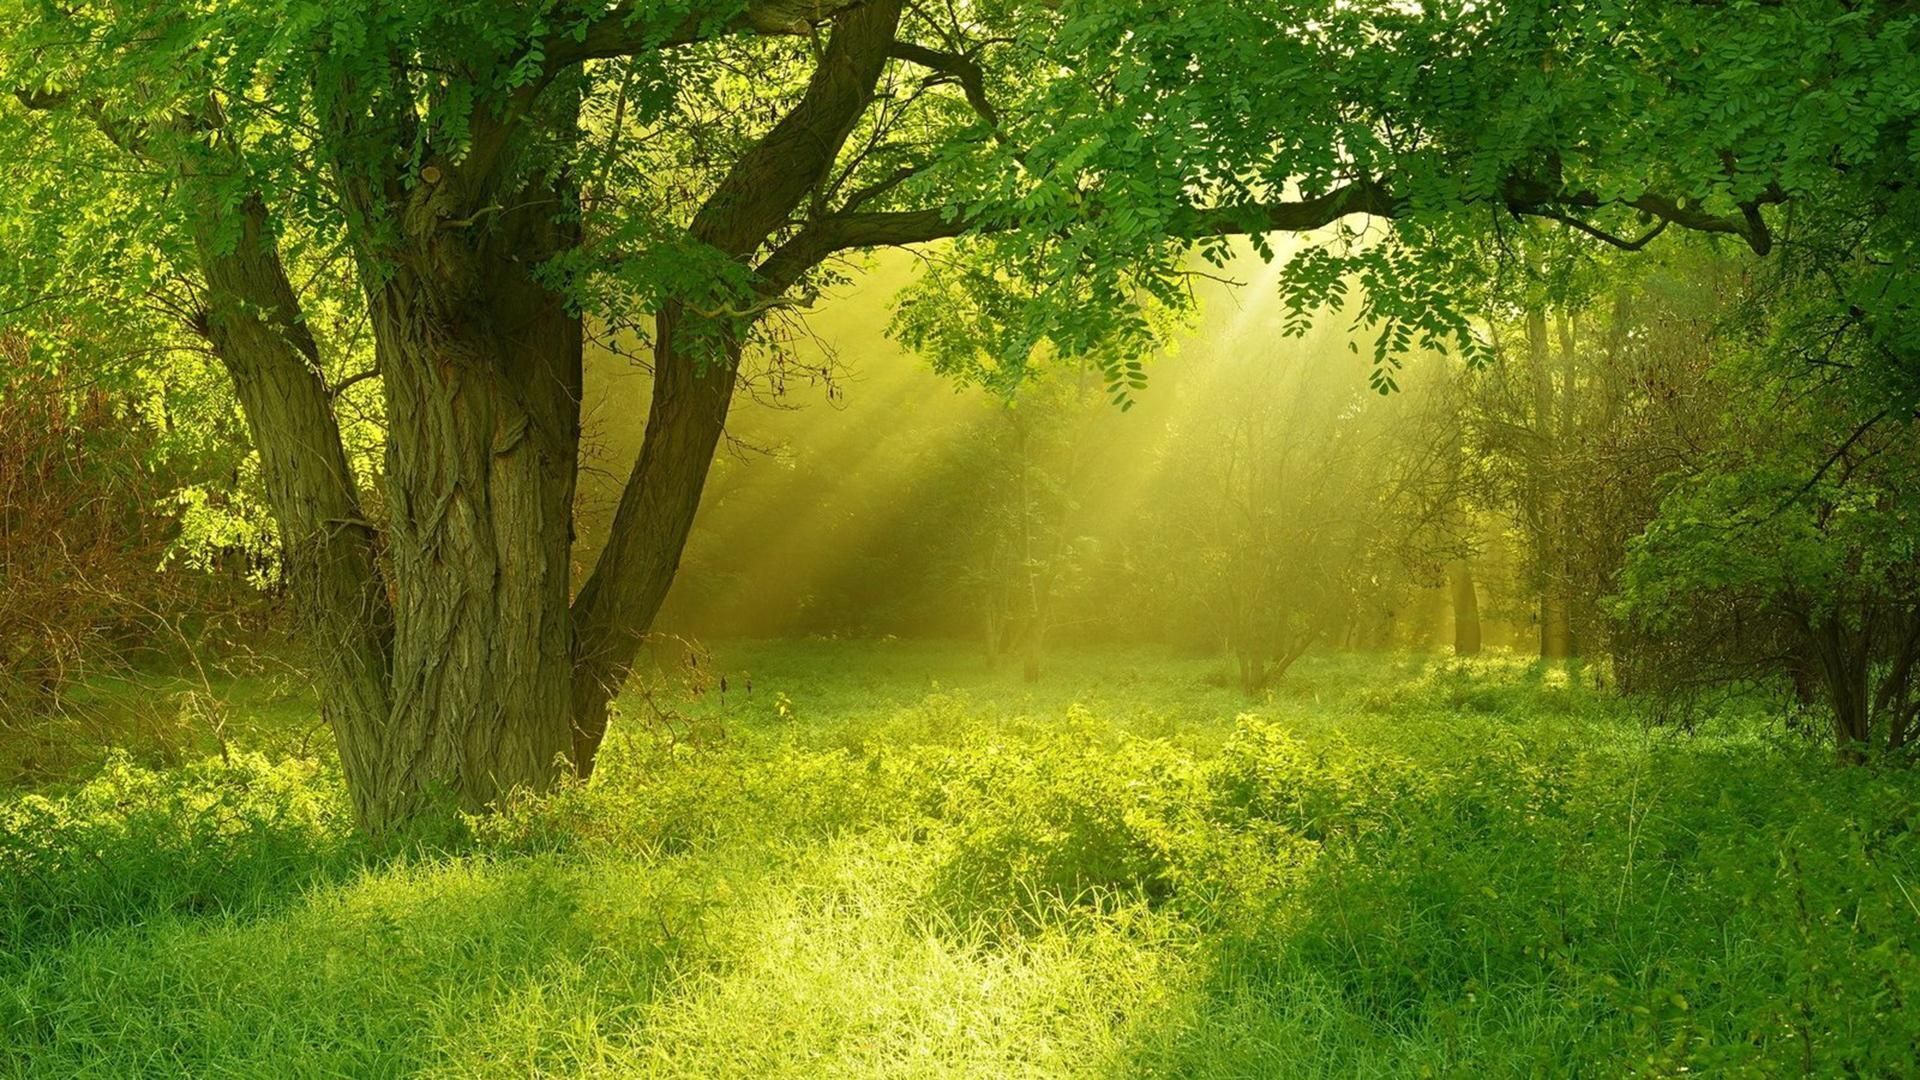 Không có gì tuyệt vời hơn để thư giãn và nghỉ ngơi trong không gian rừng cây yên bình. Với hình nền rừng cây đẹp, bạn sẽ cảm nhận được niềm vui và sự bình yên, giúp bạn tạm quên đi những ồn ào và stress trong cuộc sống.